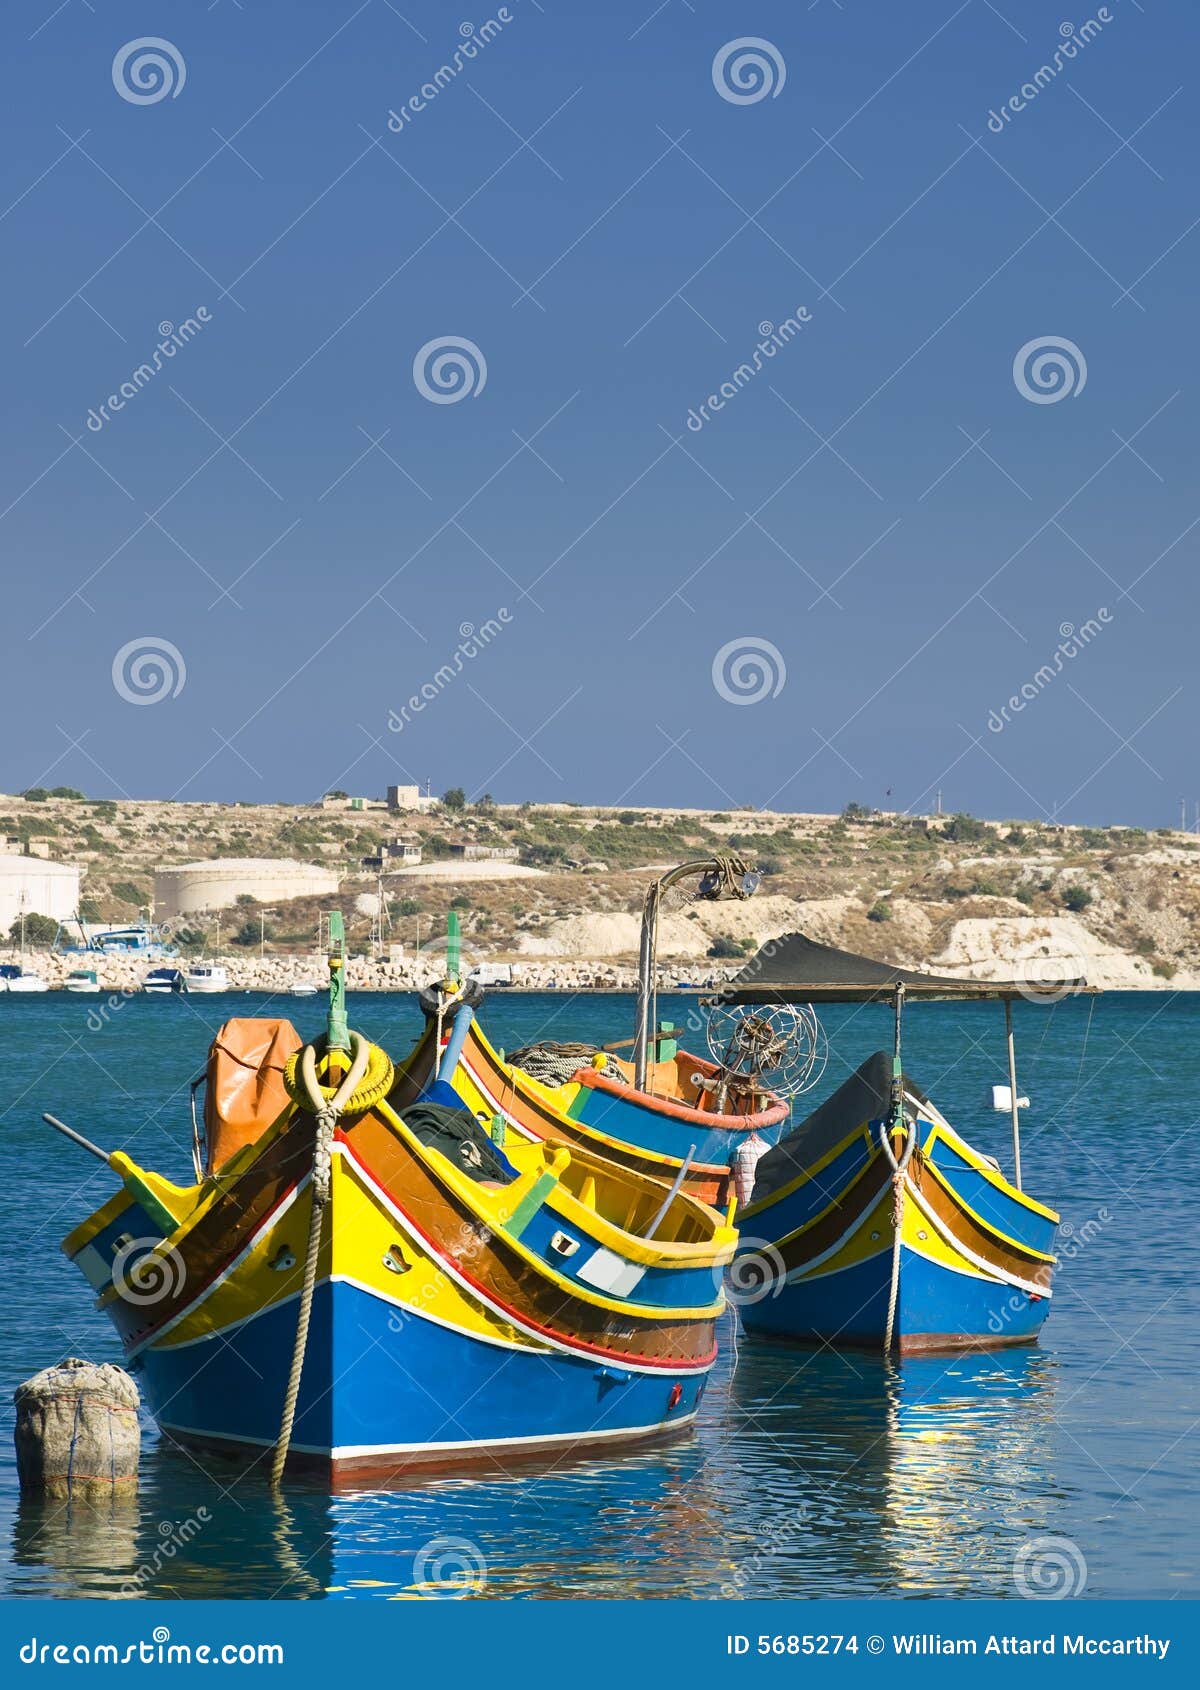 malta fishing village